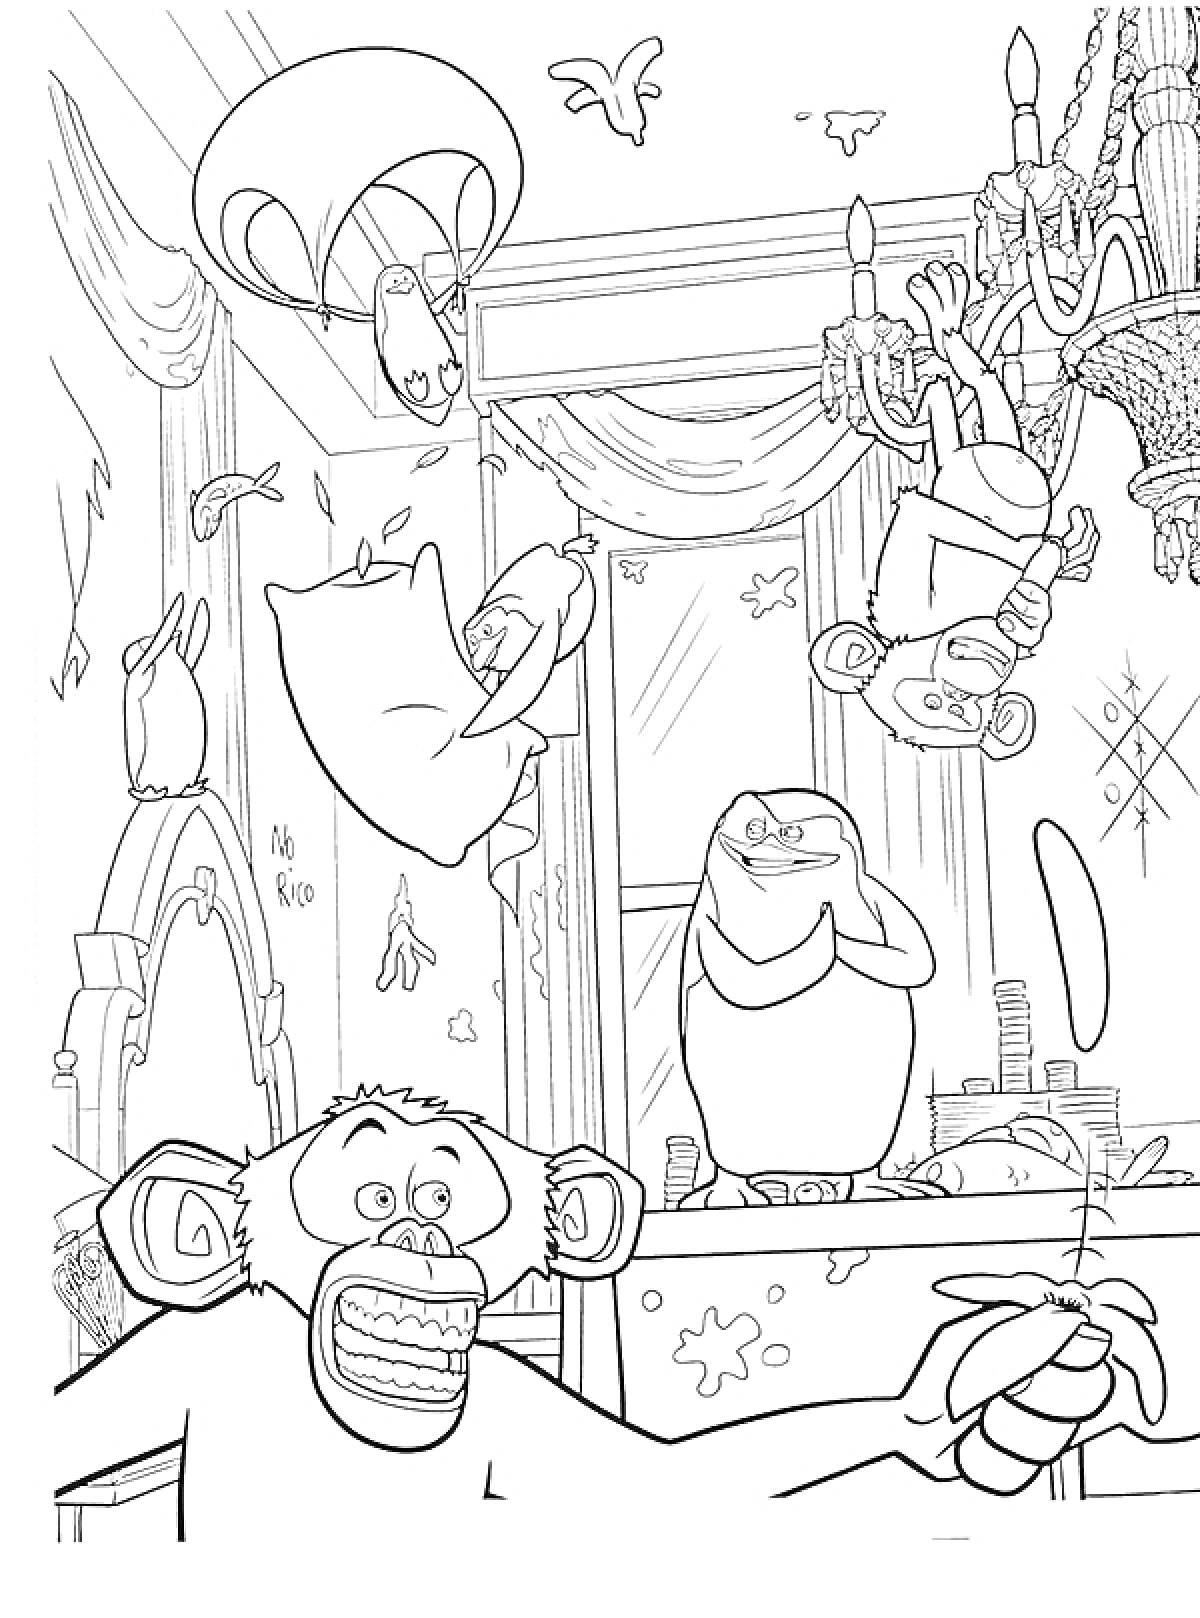 Пингвины и обезьяны в комнате с люстрой